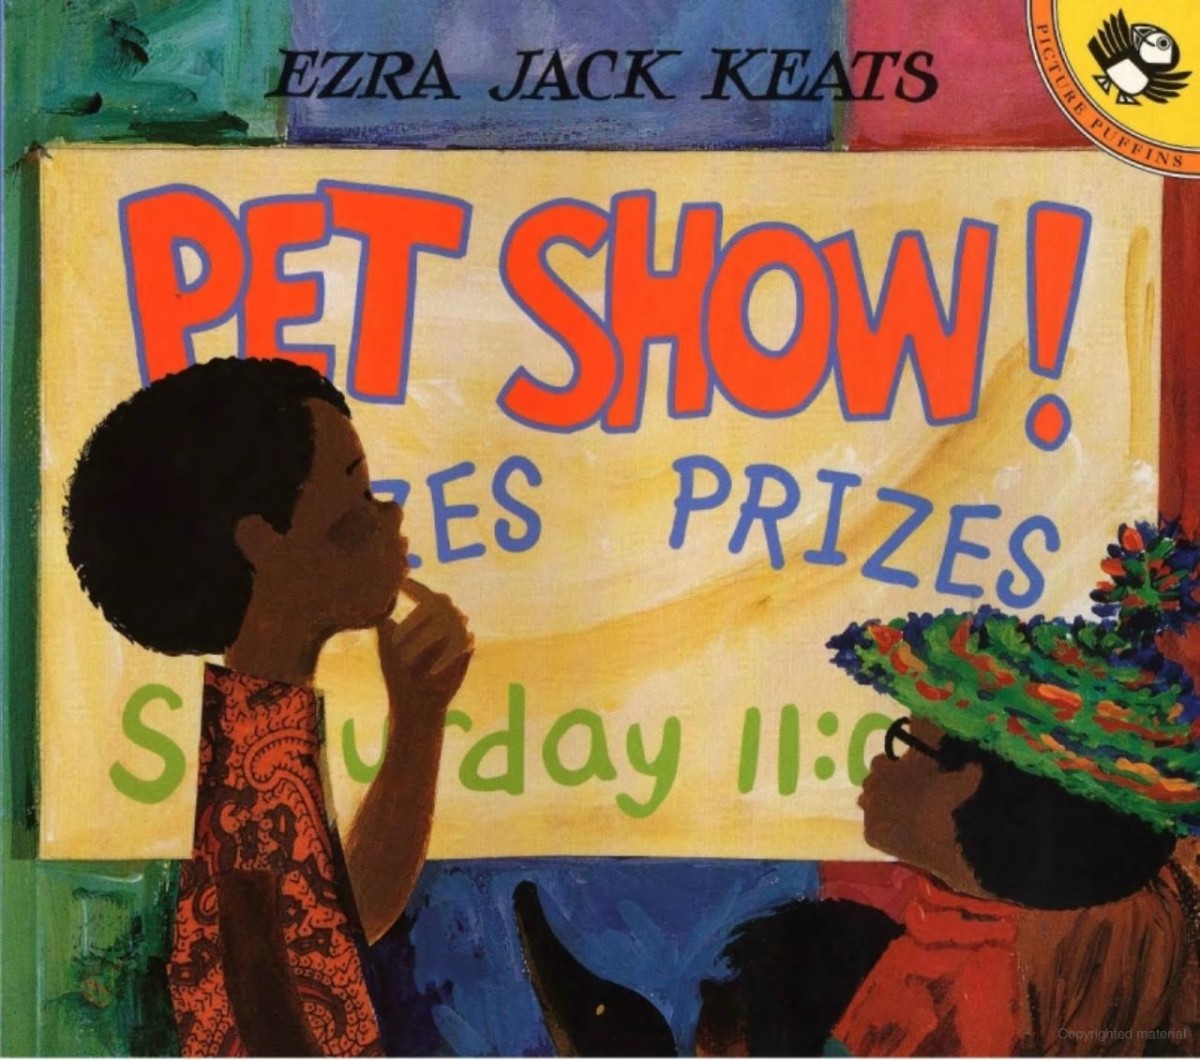 Pet Show! By Ezra Jack Keats